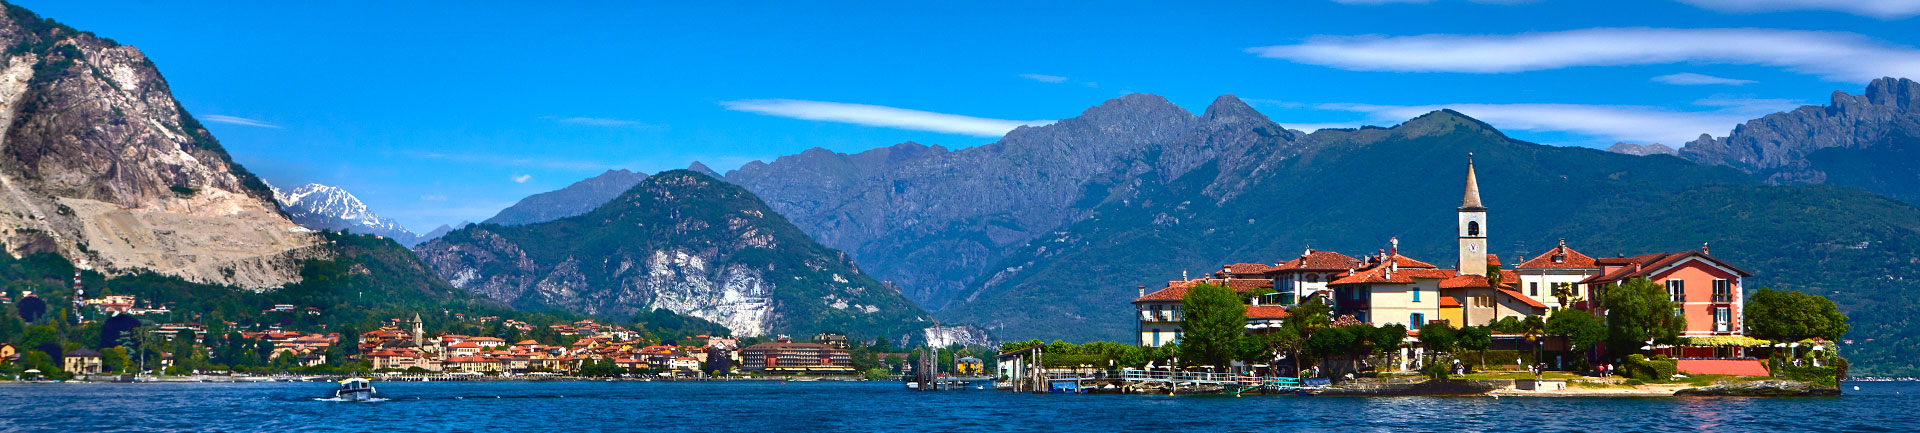 Stresa. La perla del lago Maggiore sospesa tra isole scenografiche.